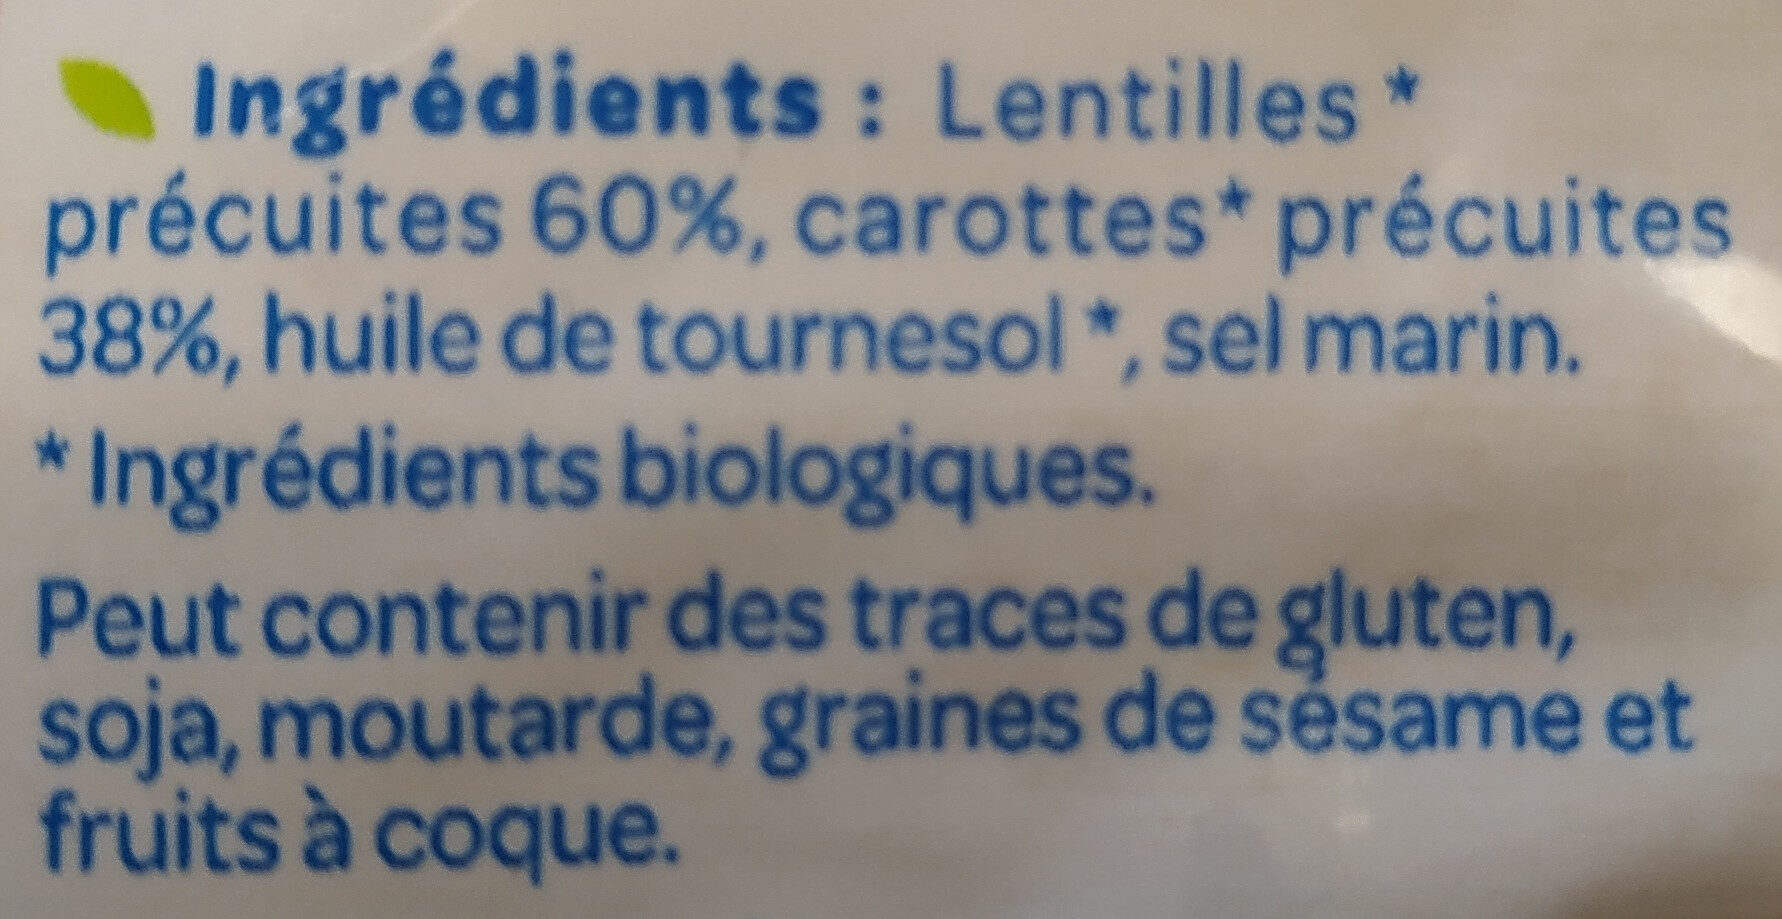 Lentilles Carottes - Ingredients - fr